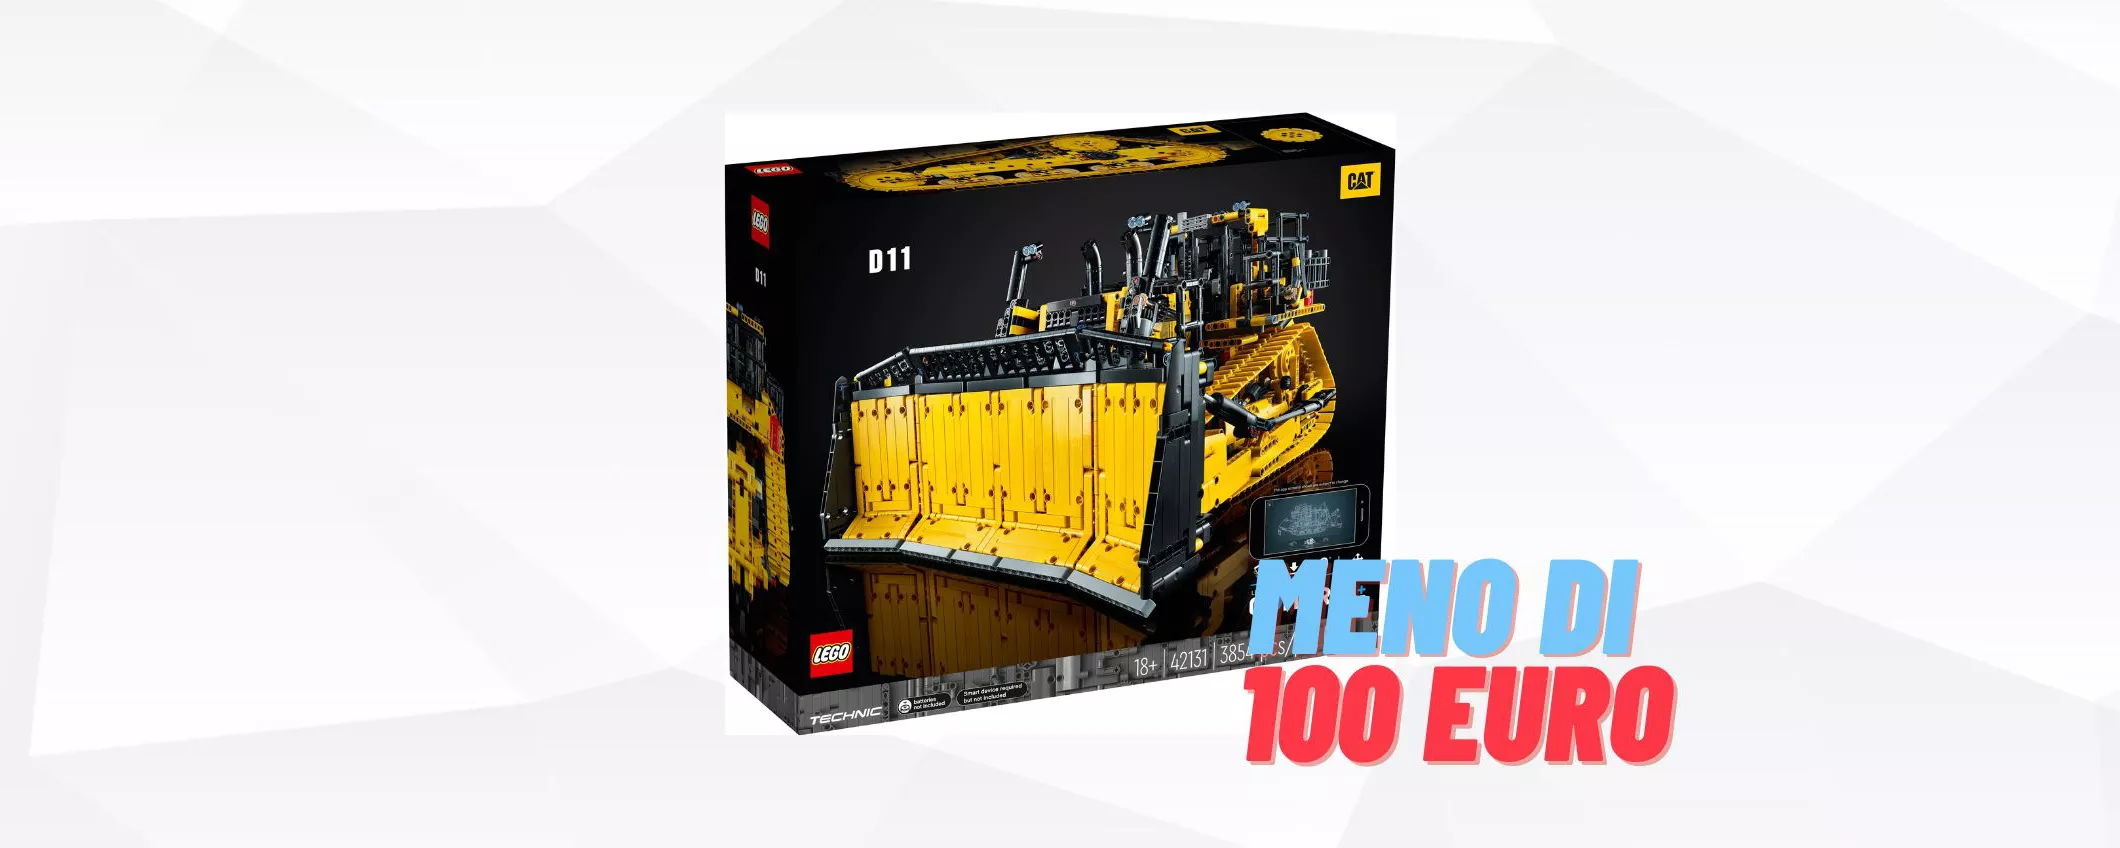 LEGO Bulldozer Cat controllato da app a 100 EURO IN MENO